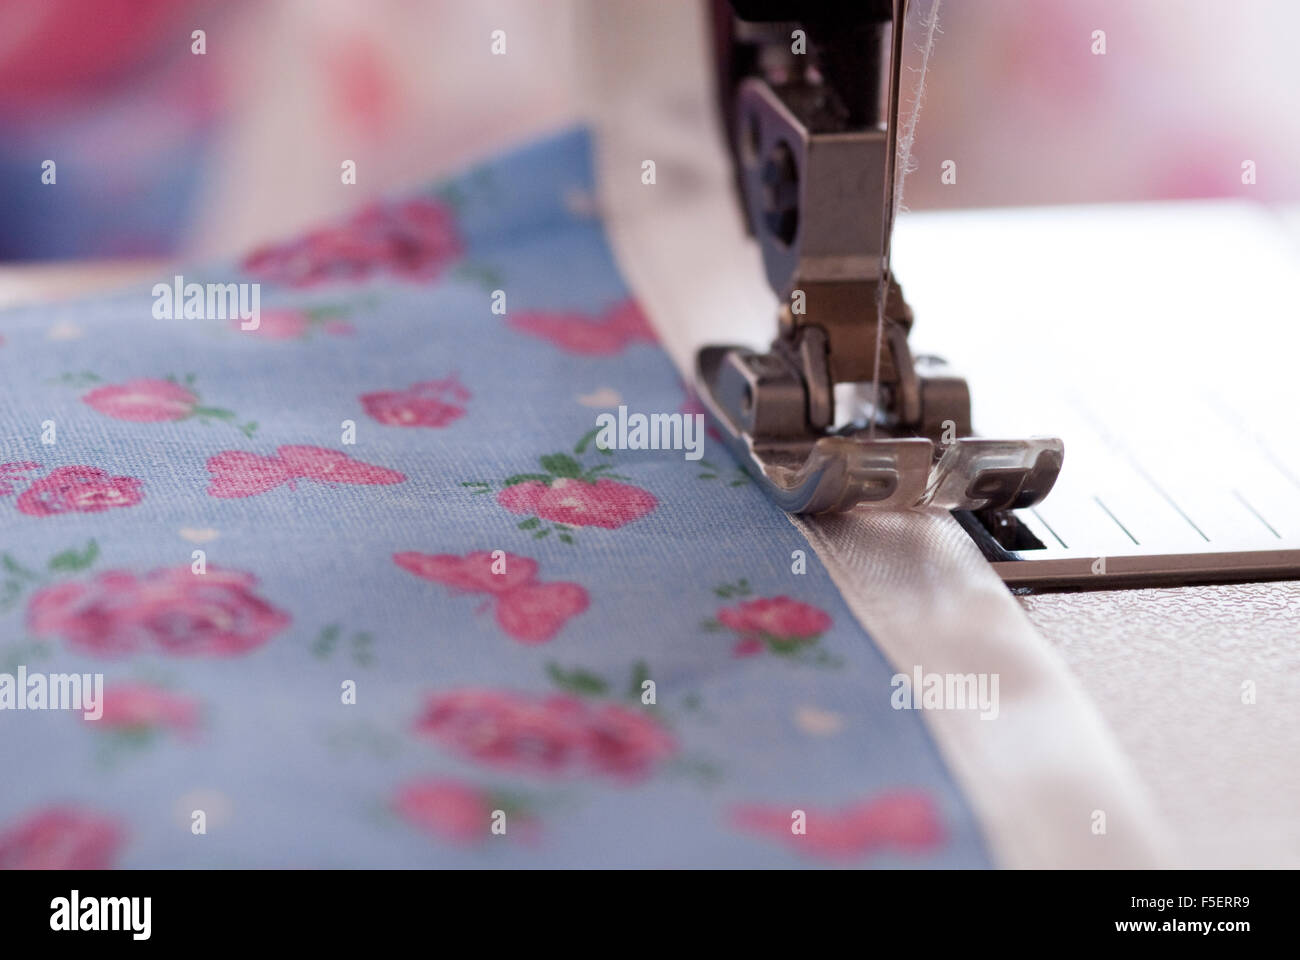 Image Concept pour la couture et décisions - gros plan d'une machine à coudre couture pied sur une jolie reliure bleu et rose tissu floral Banque D'Images